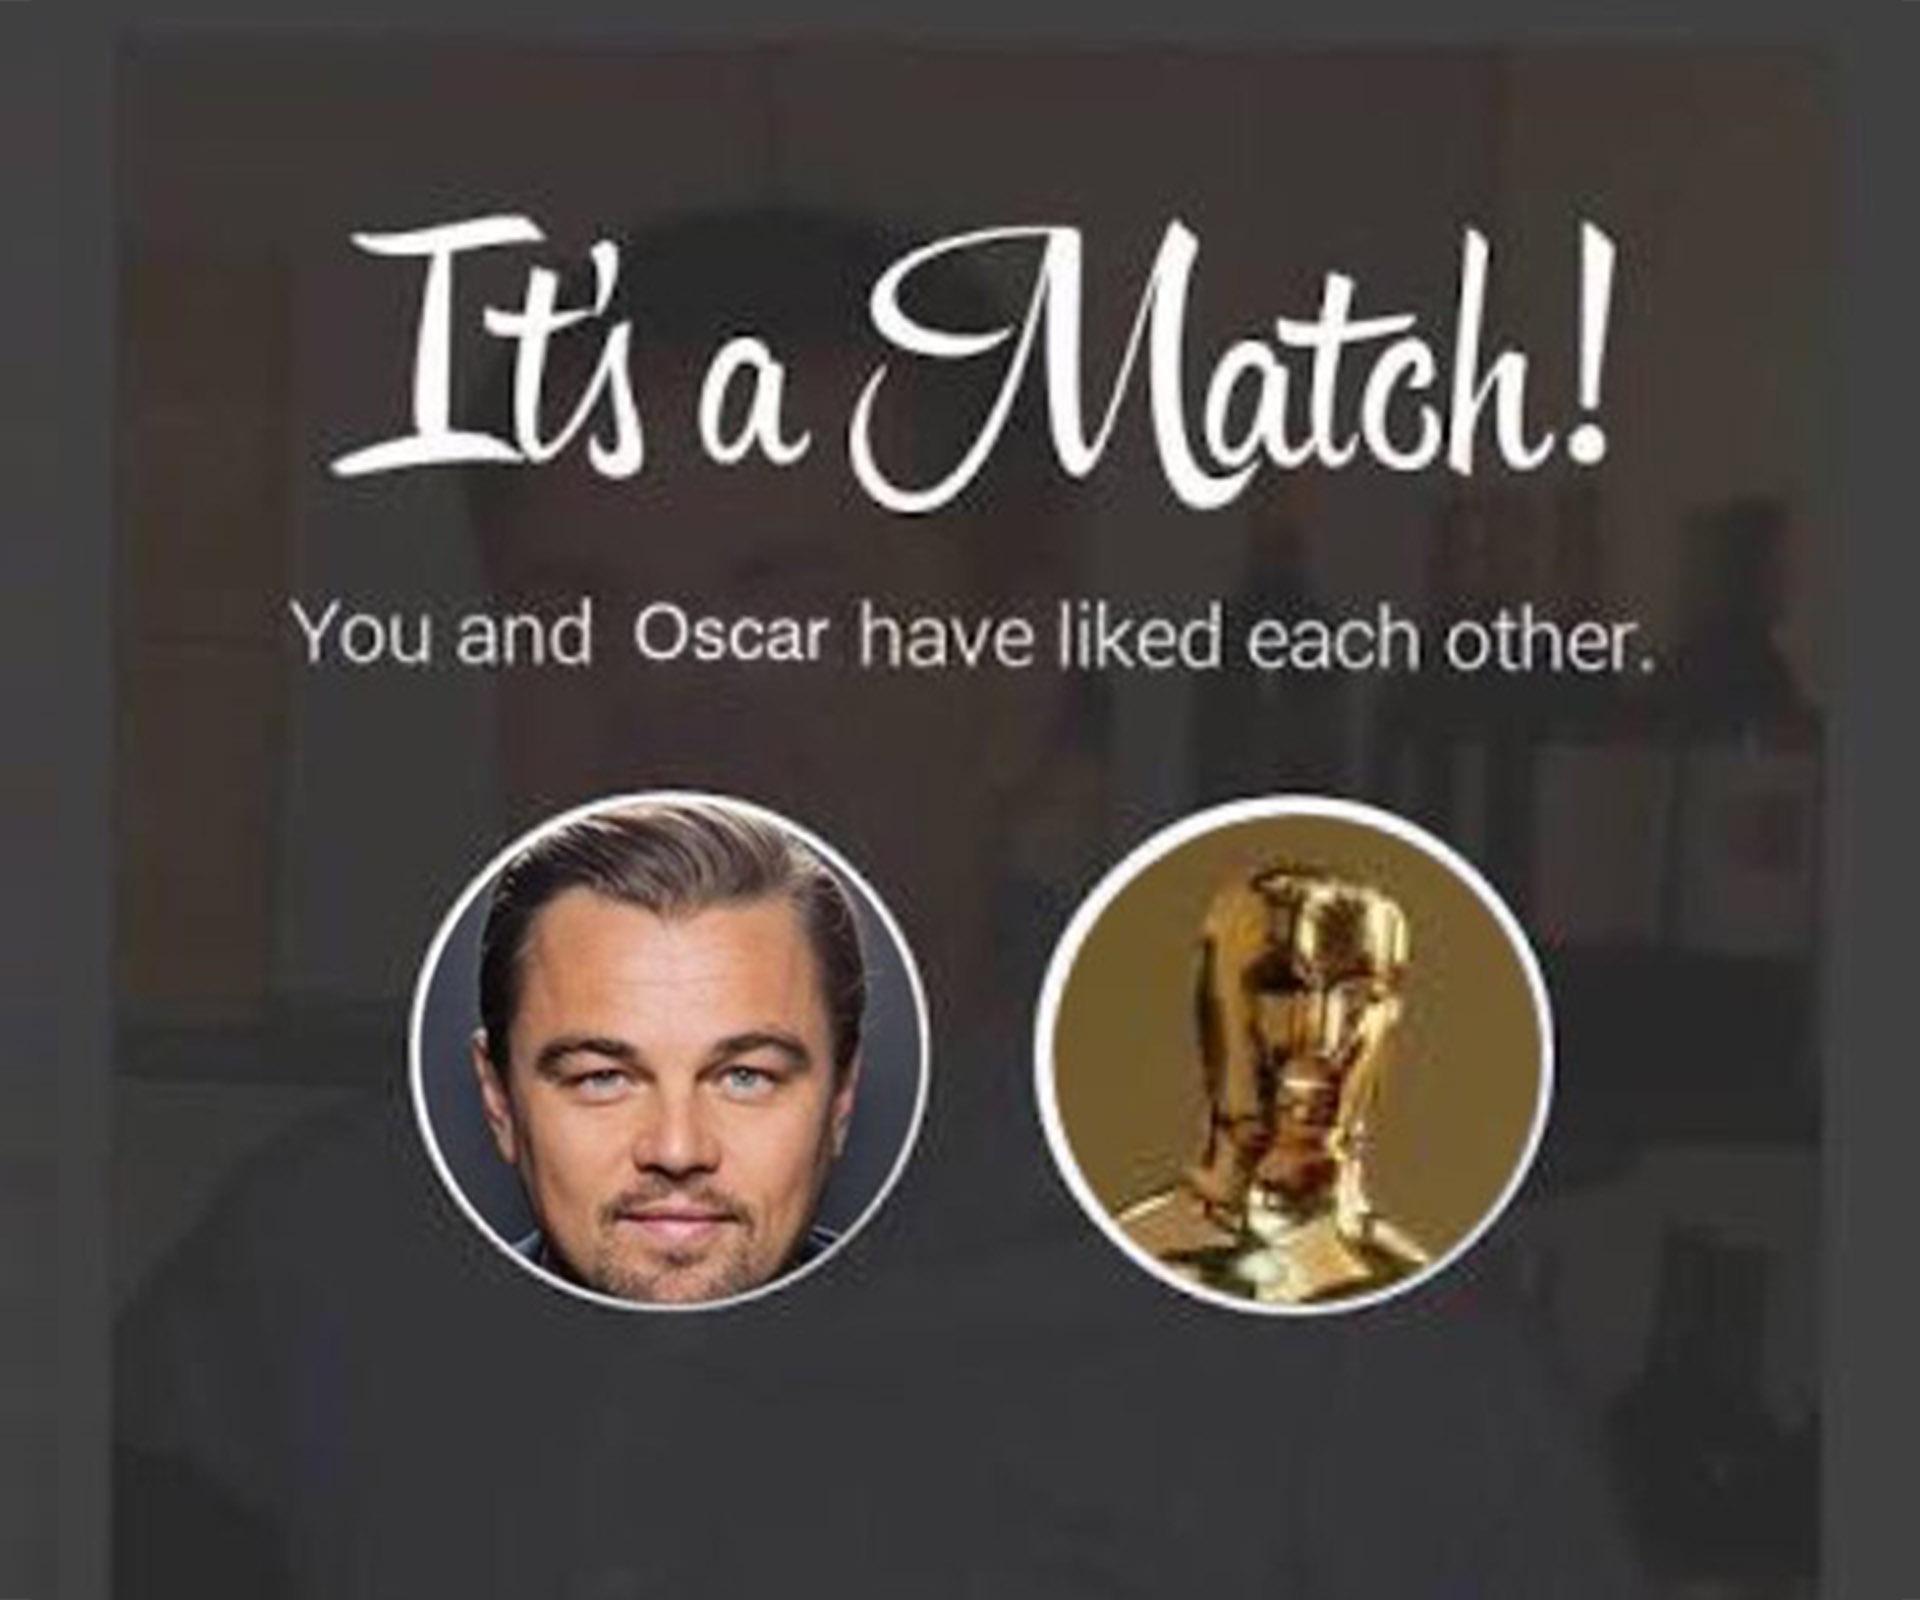 Leonardo DiCaprio’s hilarious Oscar memes